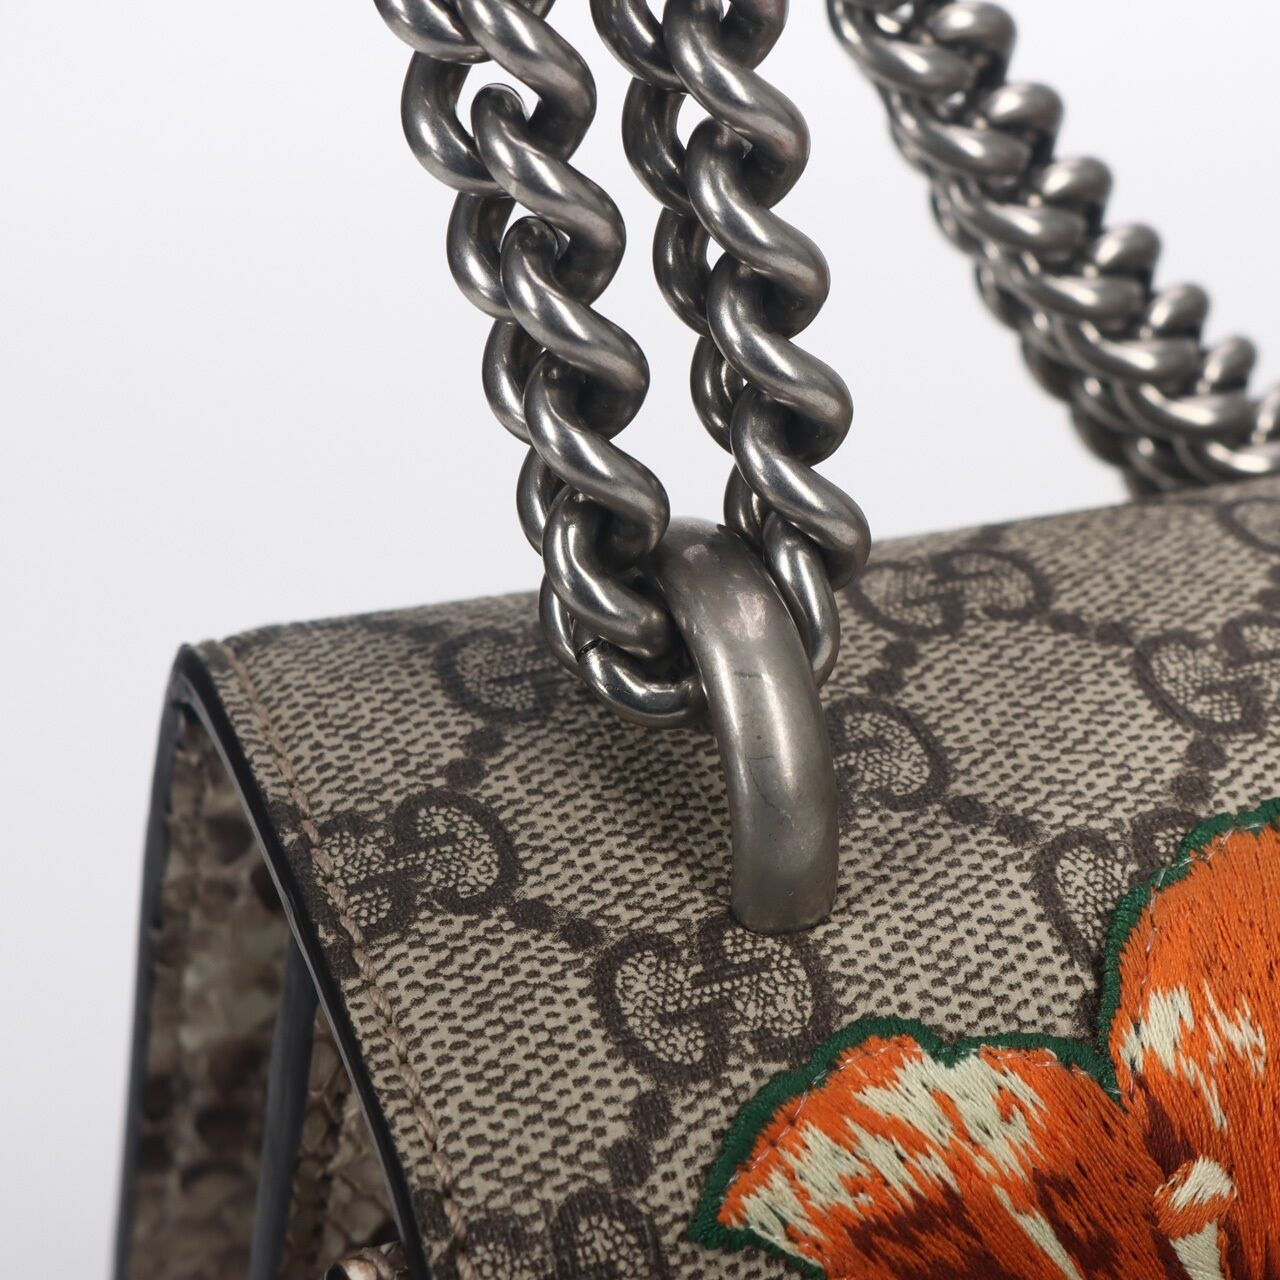 Gucci GG Supreme Monogram Medium Embroidered Dionysus Shoulder Bag